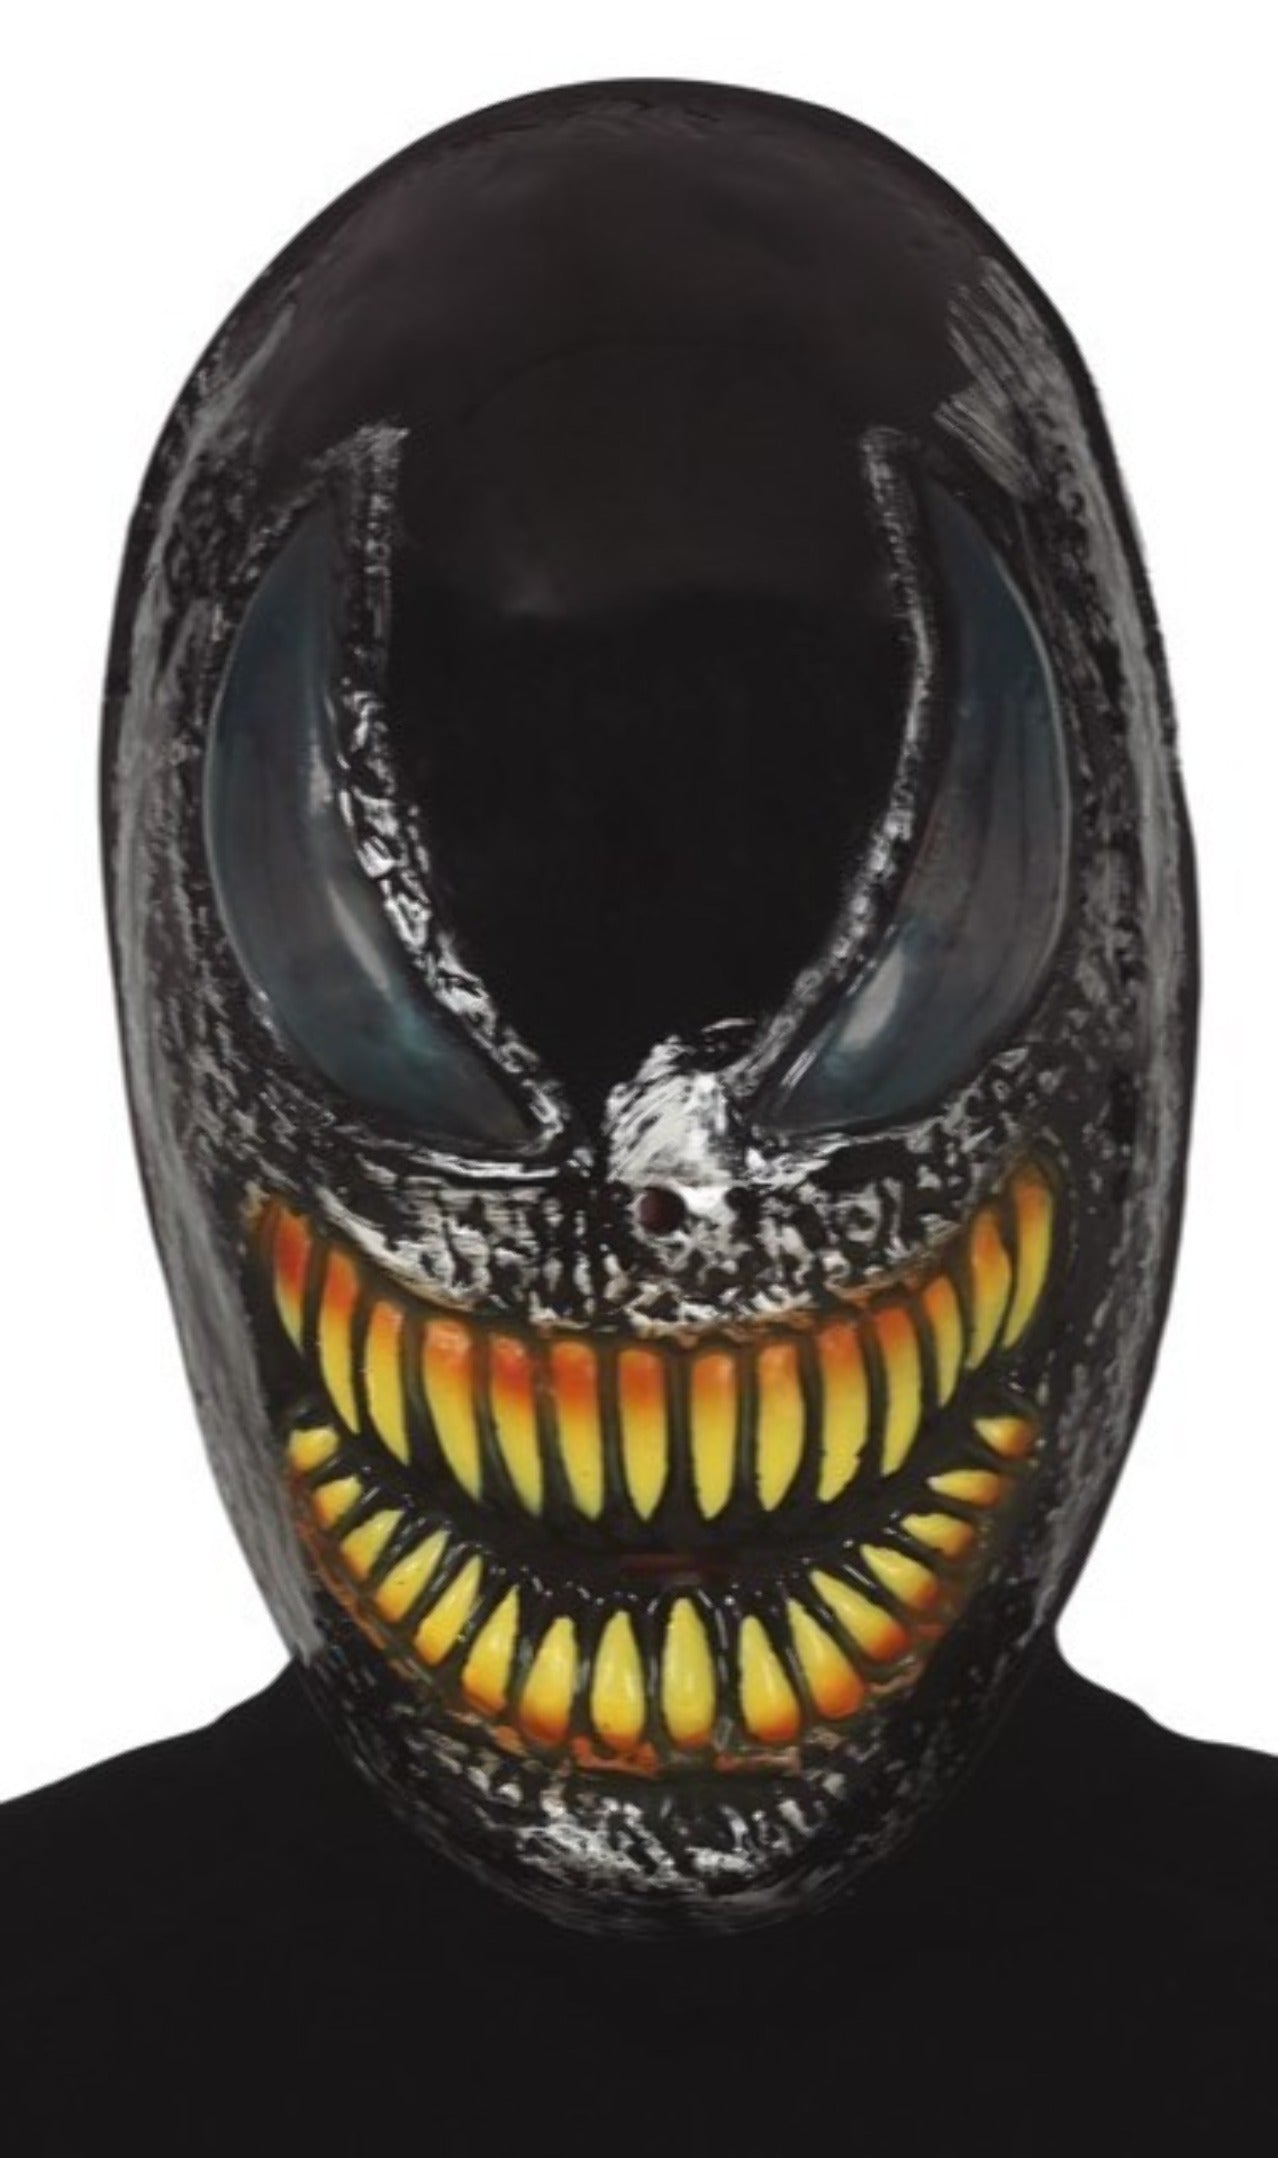 maschera Venom  Costumalia by Signor Costume